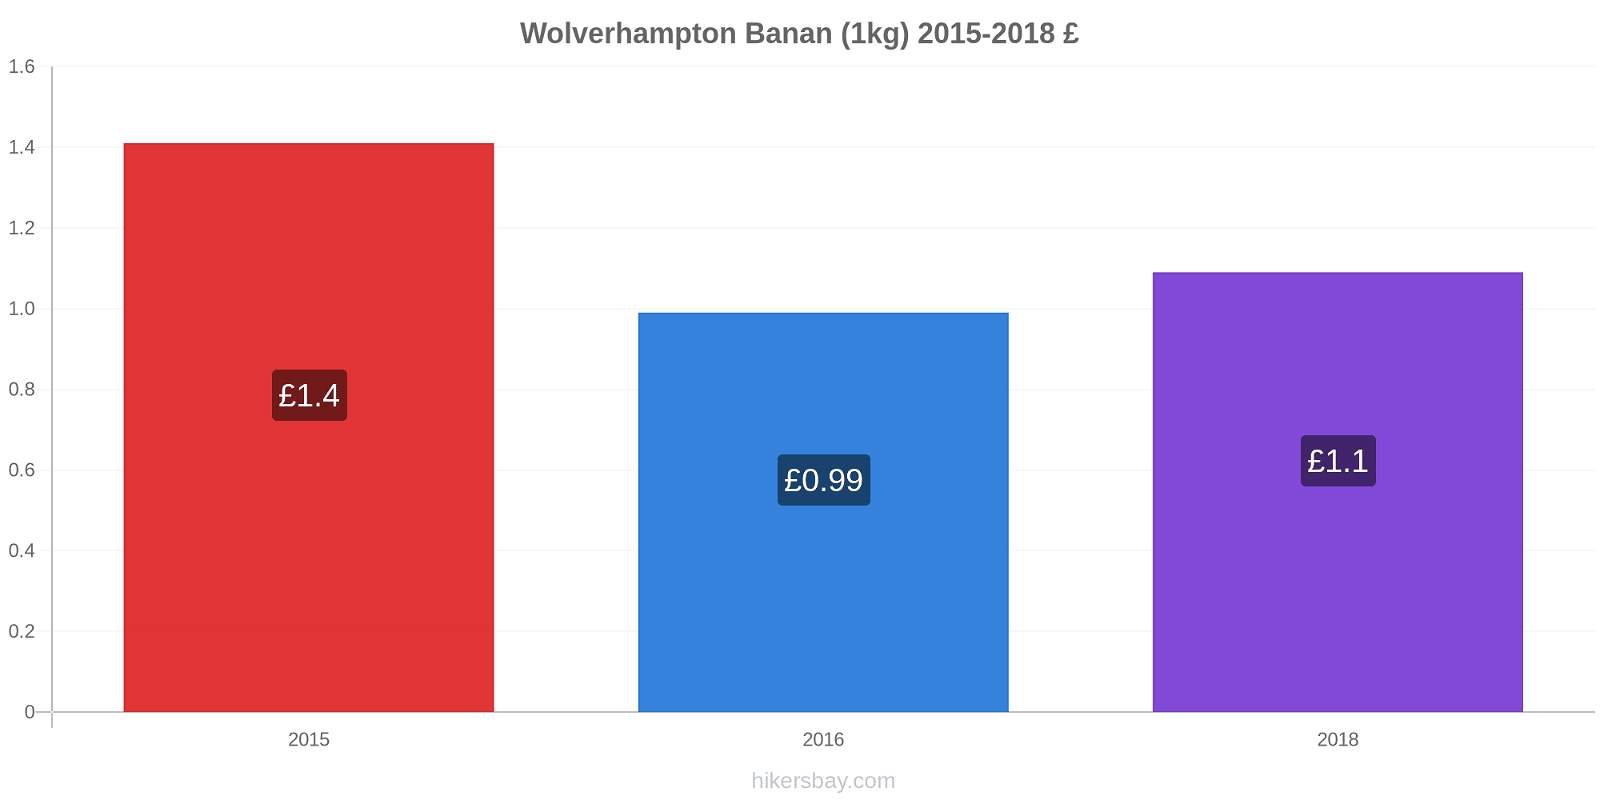 Wolverhampton prisendringer Banan (1kg) hikersbay.com